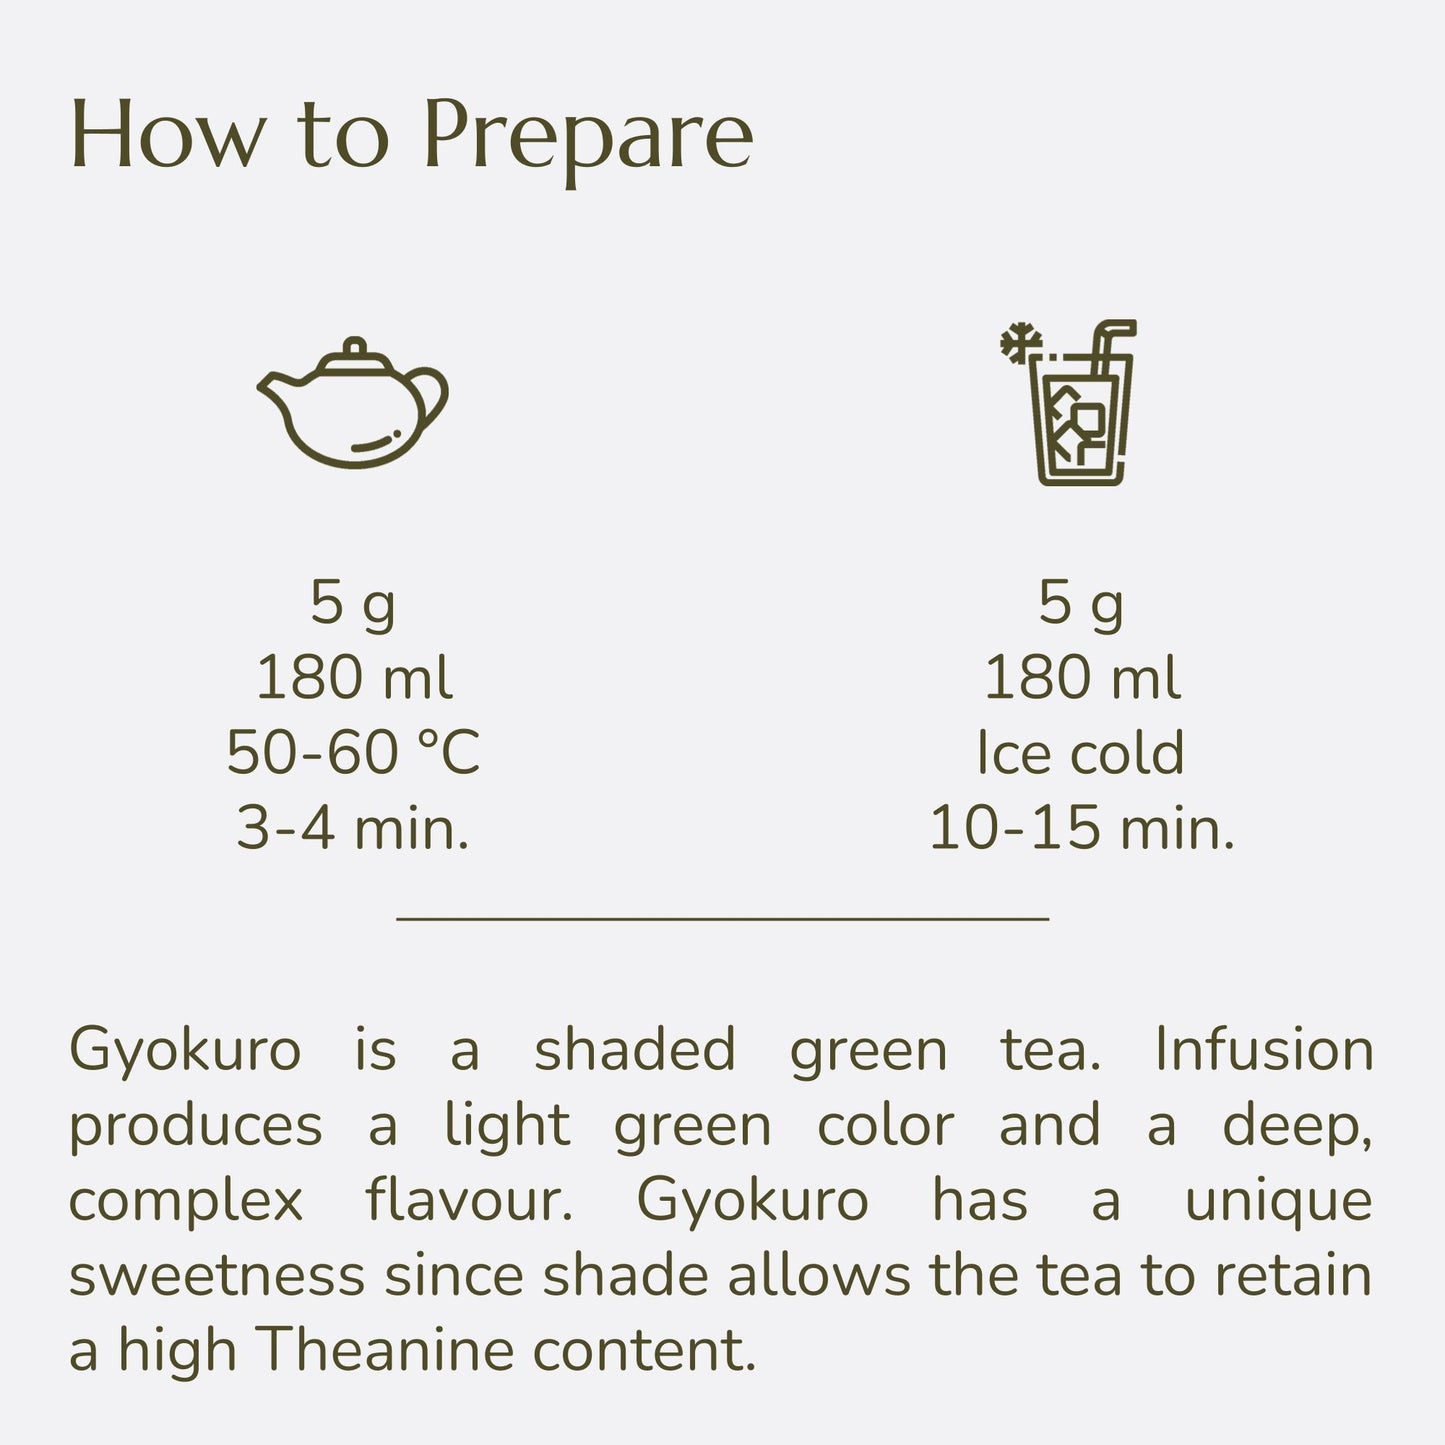 Anna's Teapot Gyokuro grüner Tee bio aus Japan - Premium Japanischer loser Grüntee aus der Ernte 2023 im wiederverschließbaren Beutel - 100g